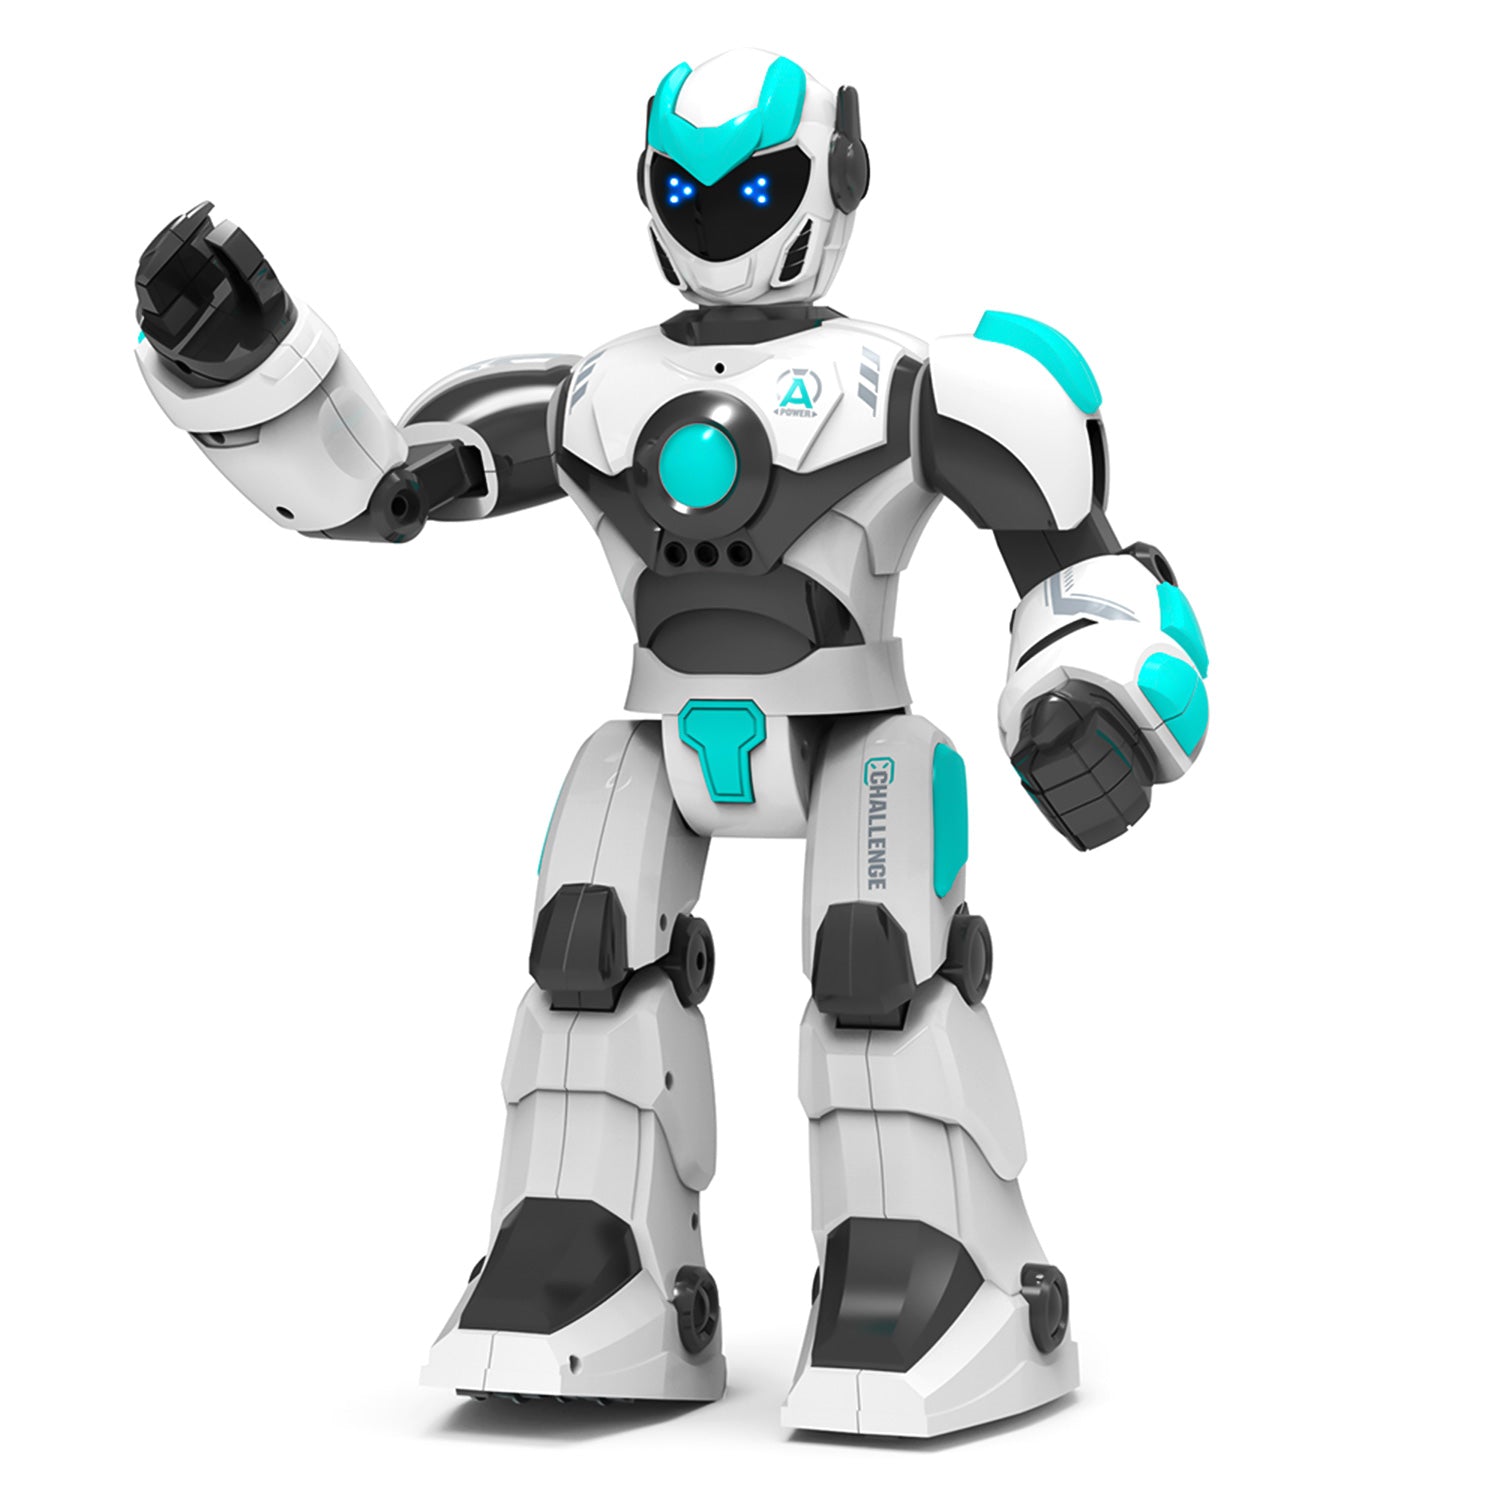 STEMTRON Robot télécommandé intelligent à commande vocale pour enfants (blanc)